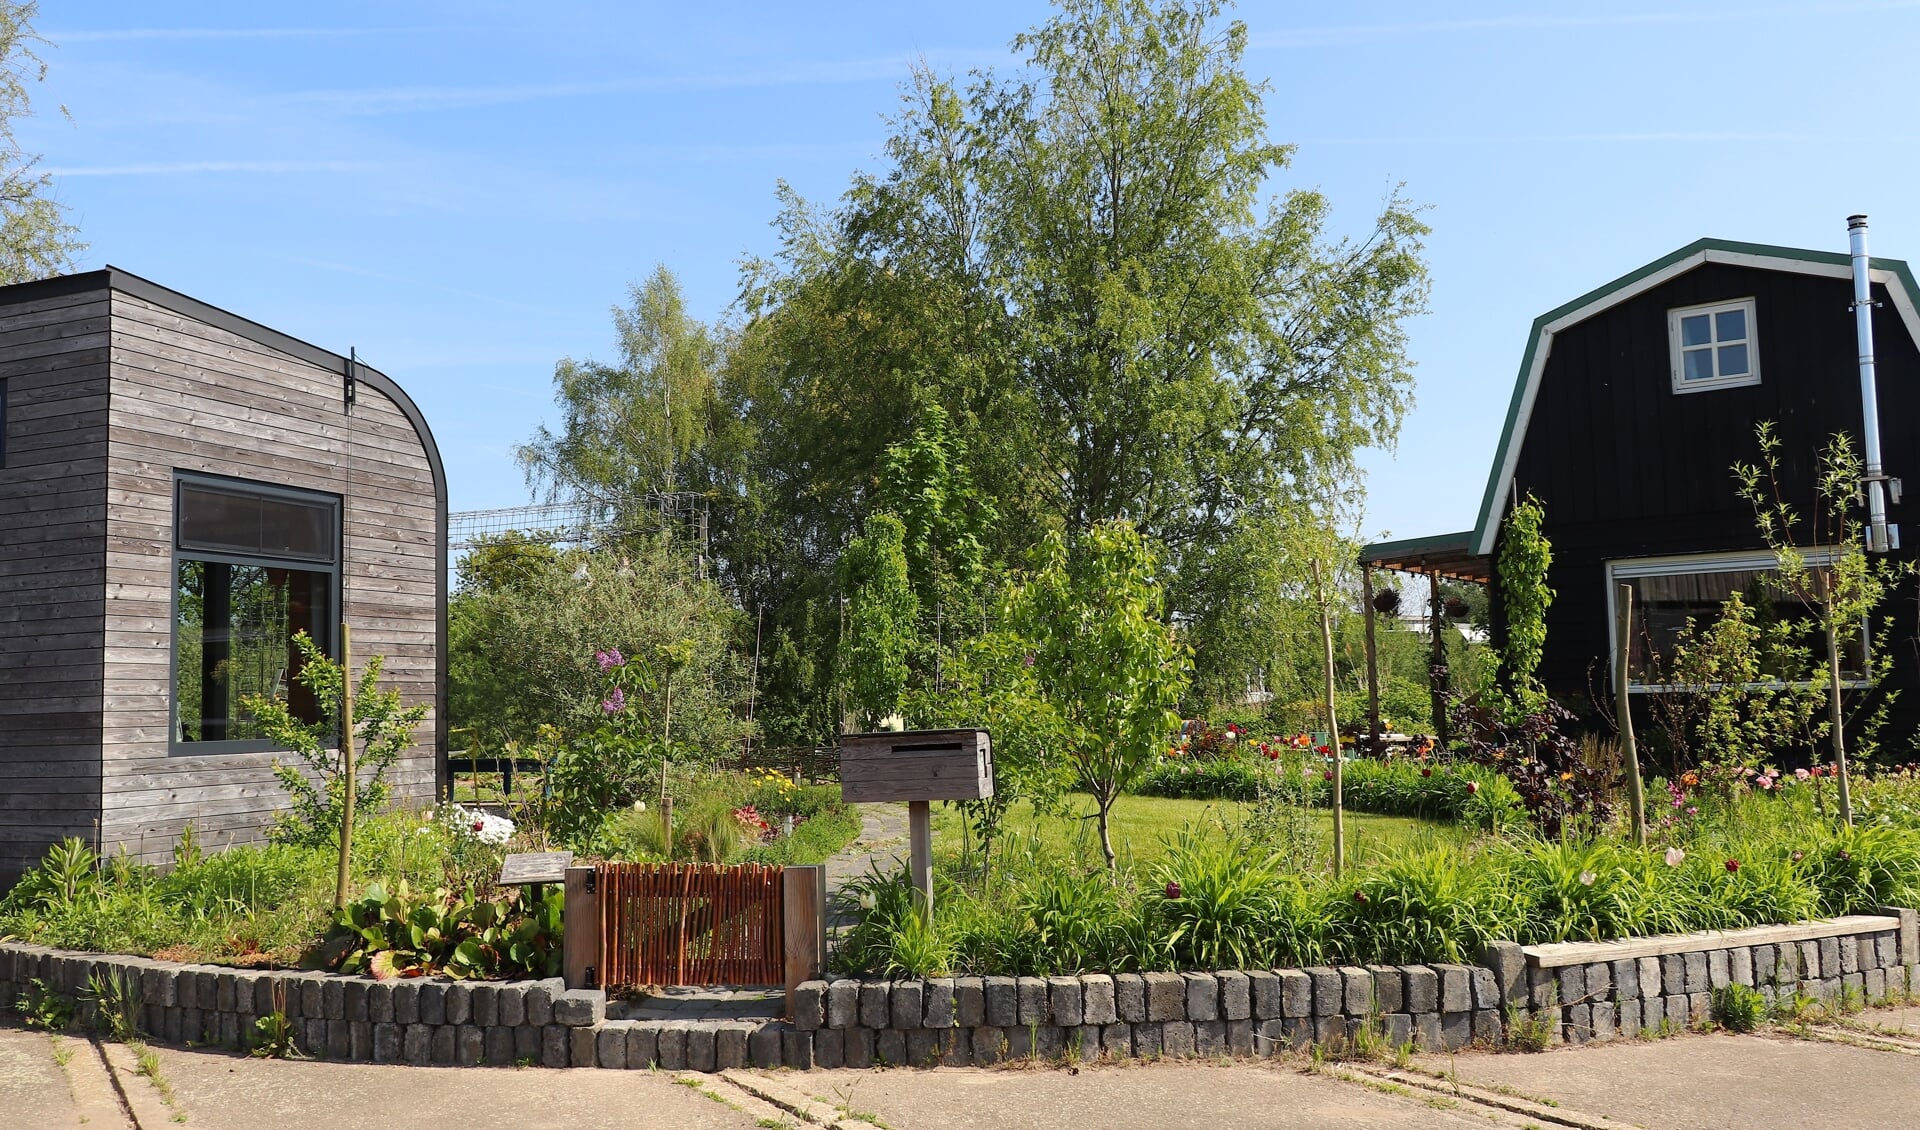 Maak op vrijdagmiddag 17 juni kennis met de zelfgebouwde tiny houses met ieder een eigen unieke tuin bij Minitopia in Den Bosch.